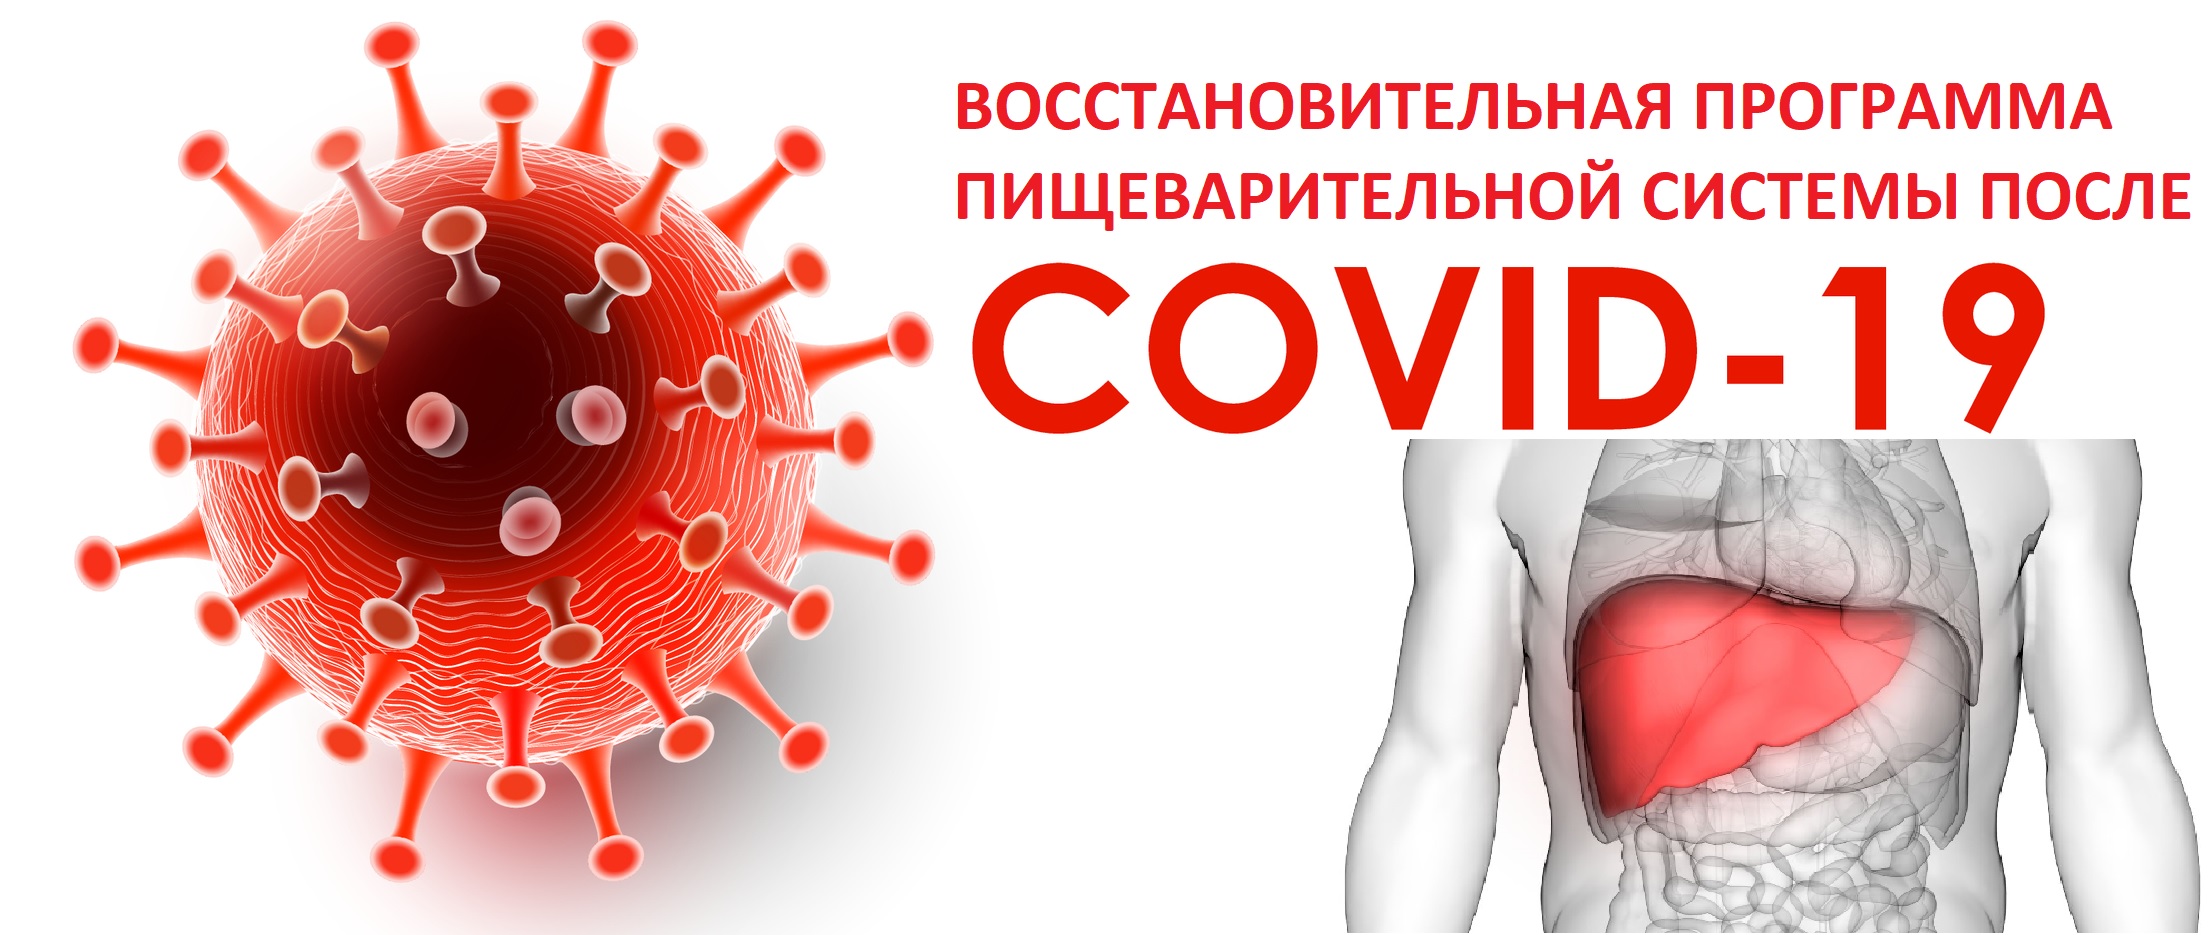 Программа реабилитации пациентов после перенесенной новой коронавирусной инфекции COVID-19 с хроническими заболеваниями пищеварительной системы